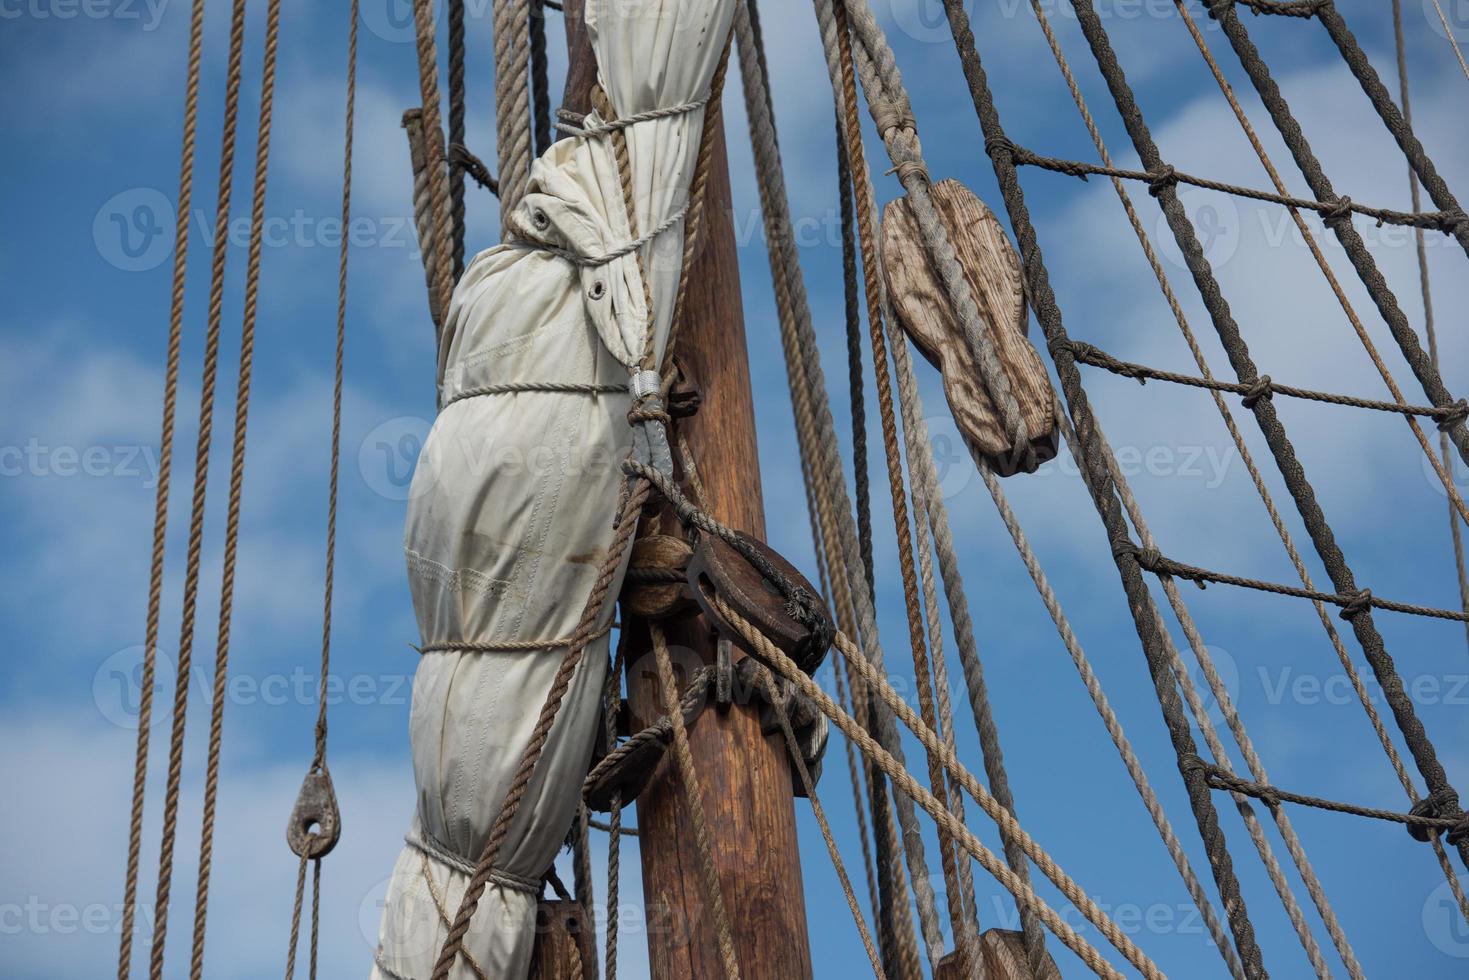 detalhe de navio de vela de navio antigo foto